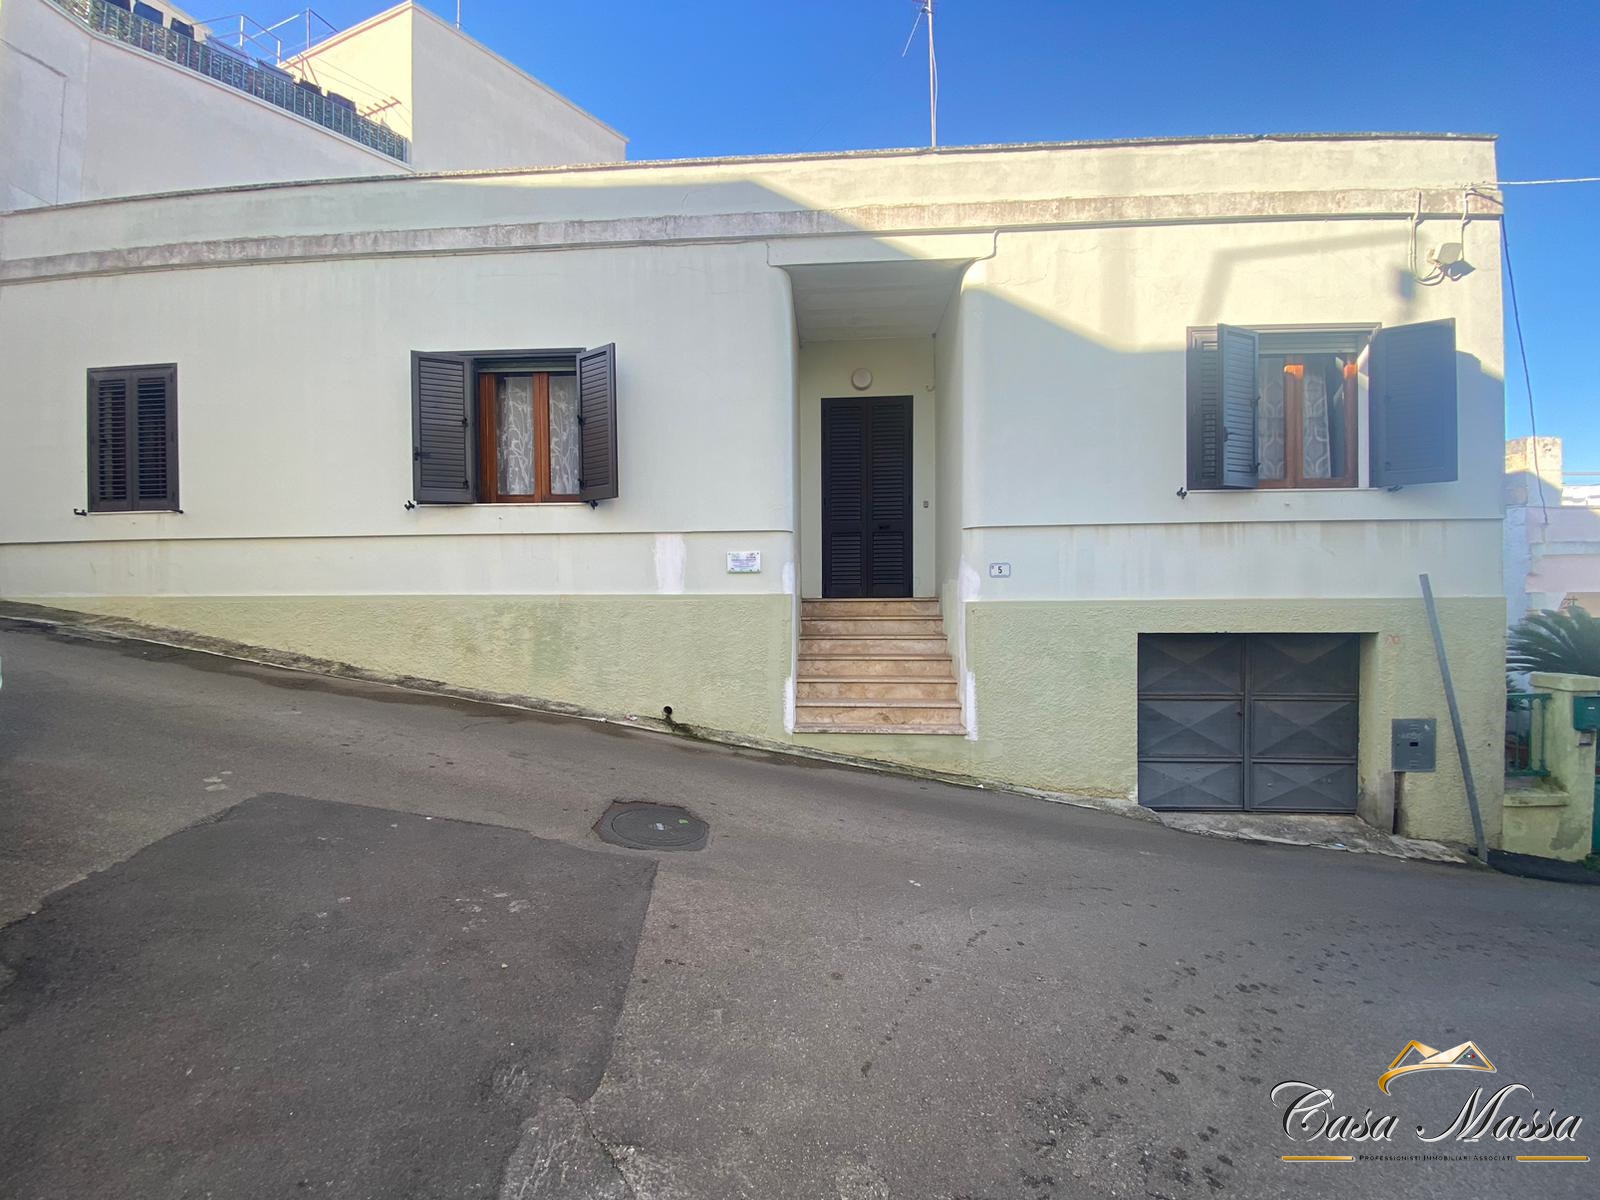 Villa in vendita a Specchia, 4 locali, prezzo € 73.000 | PortaleAgenzieImmobiliari.it